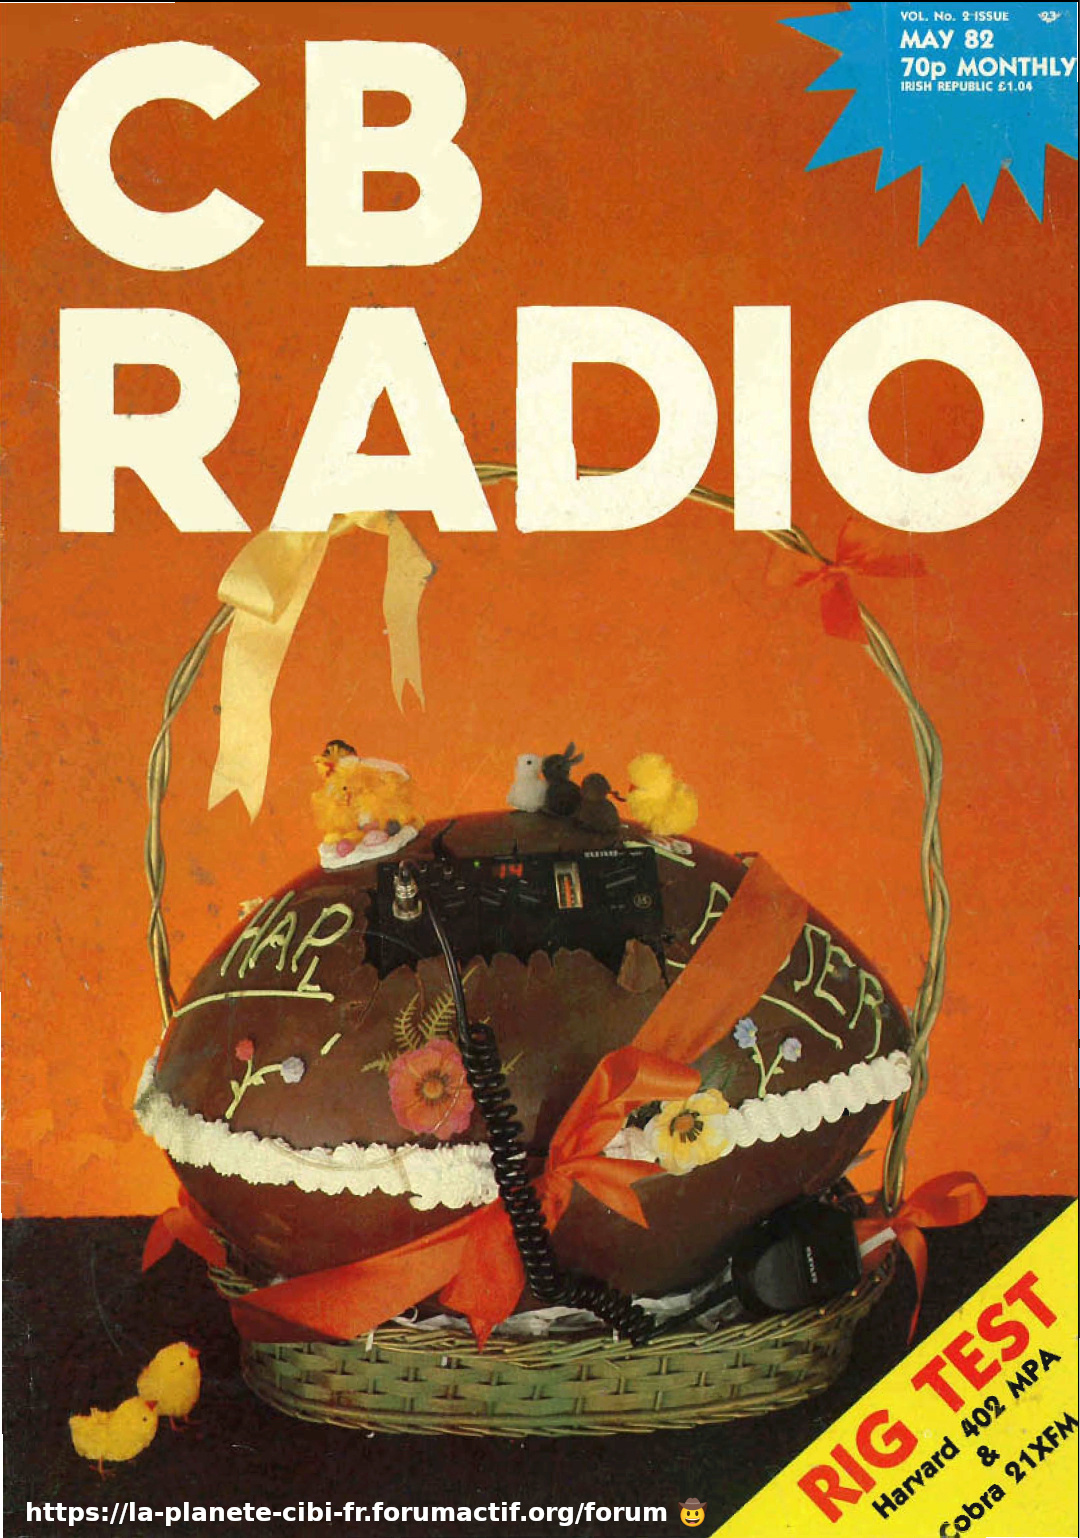 ràdio - CB Radio (Magazine GB) Z03_cb13